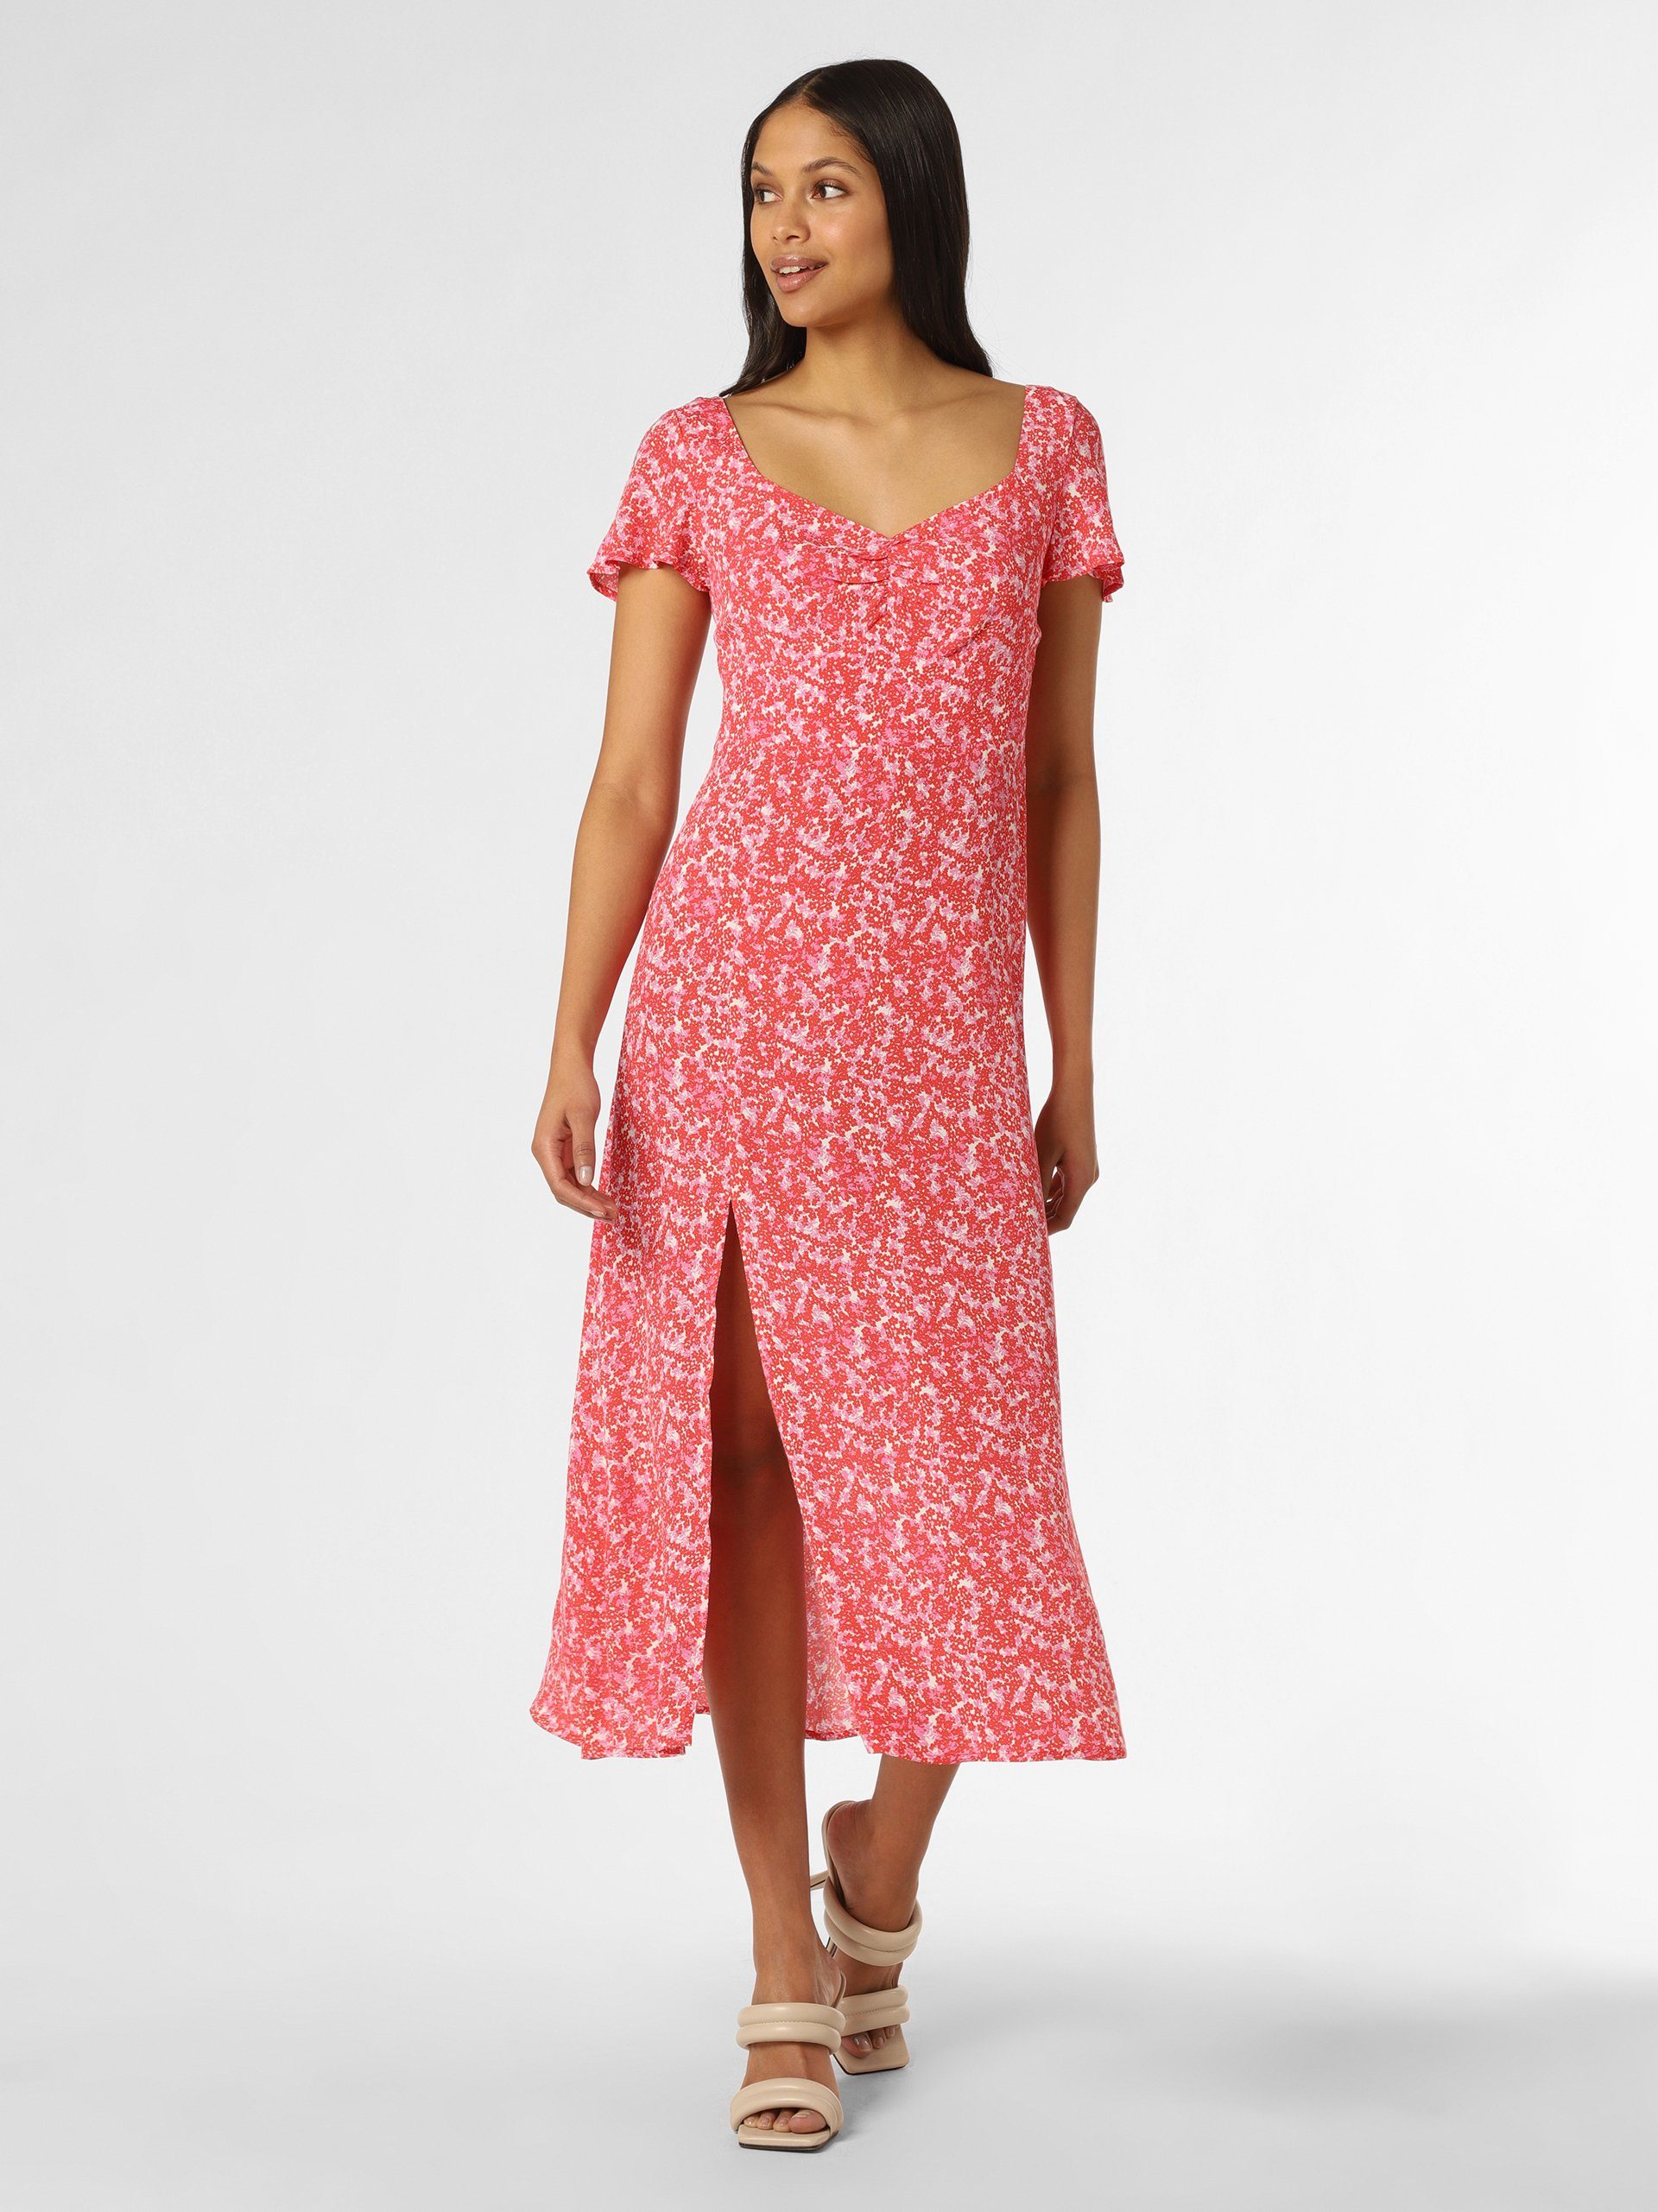 Marie Lund A-Linien-Kleid pink